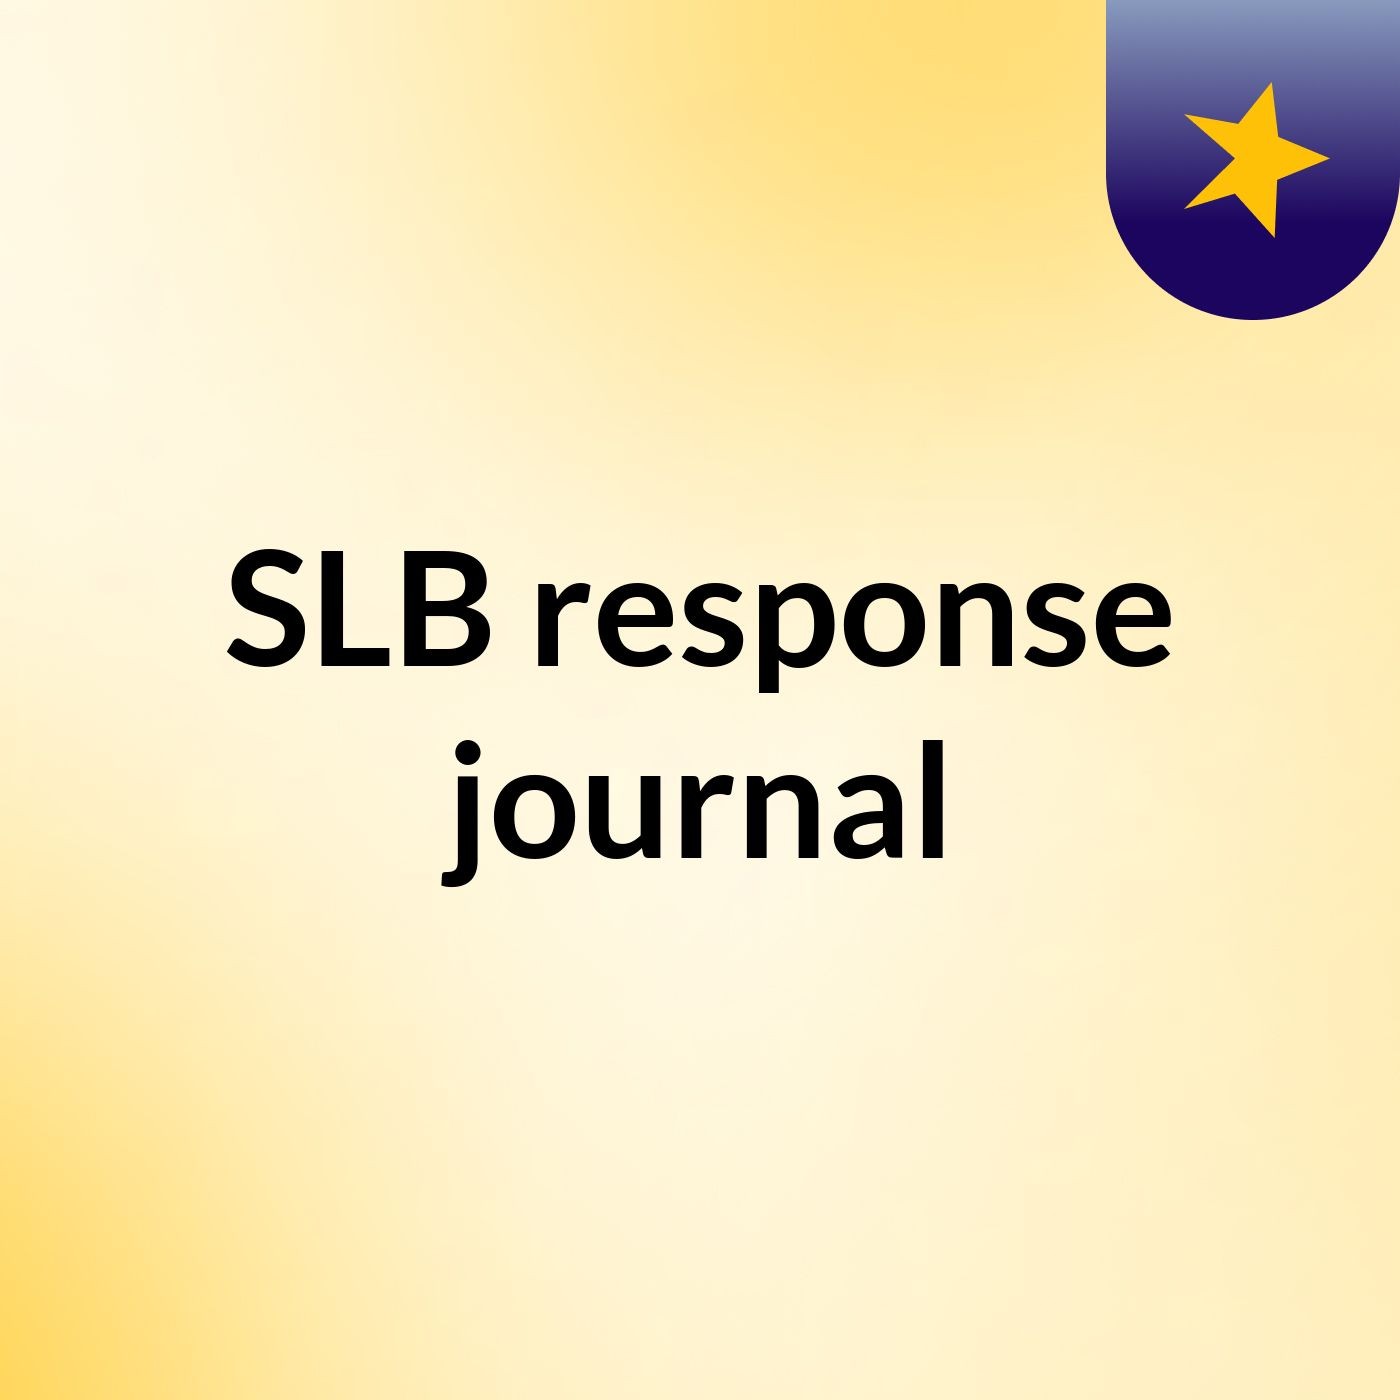 Episode 7 - SLB response journal